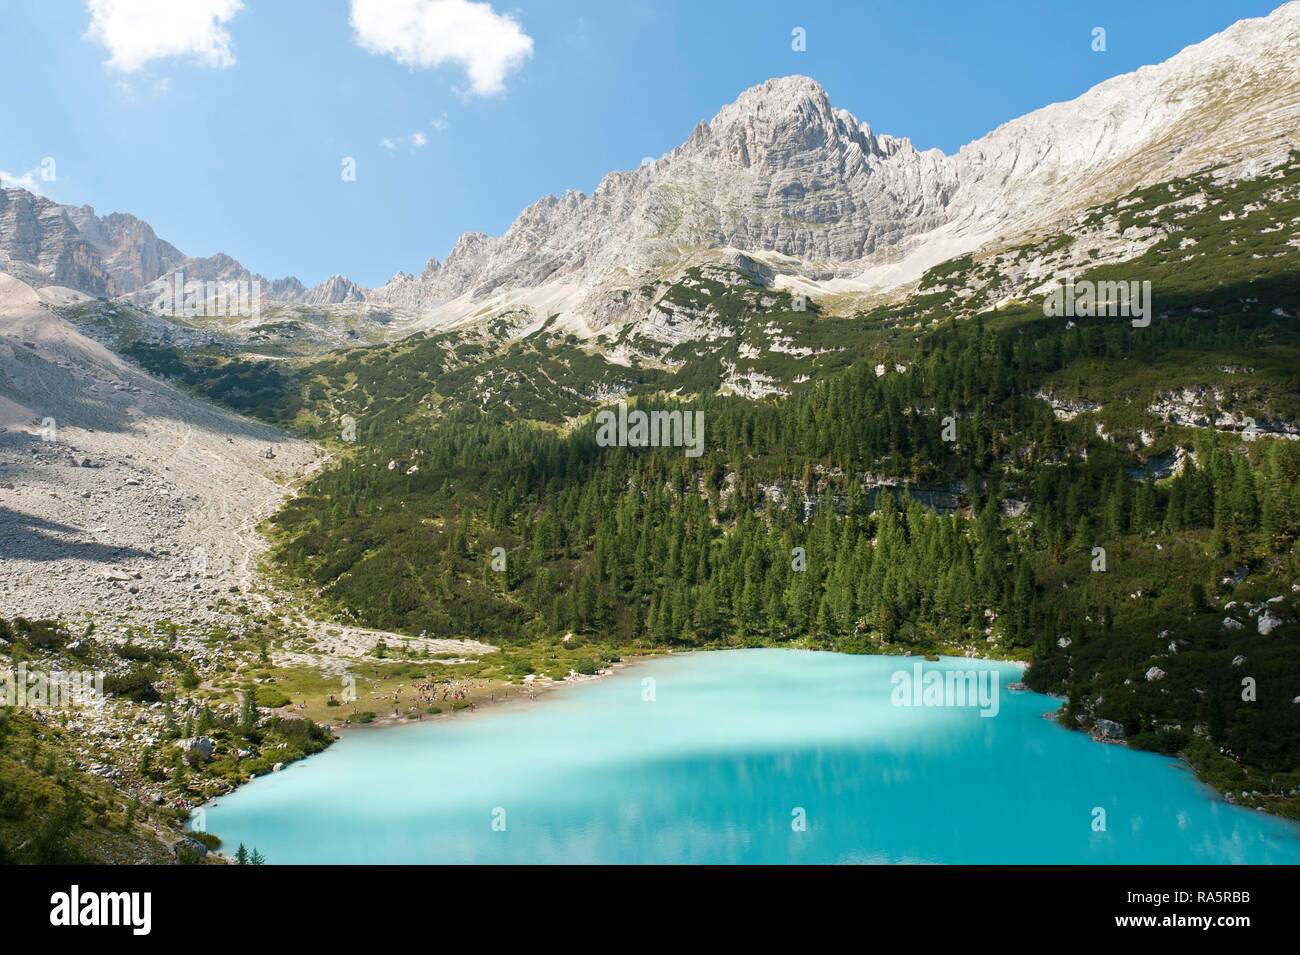 Turquoise blue mountain lake, Sorapis lake, 1923 m, Lago del Sorapis, near Cortina d'Ampezzo, Dolomites, Belluno, Veneto, Italy Stock Photo